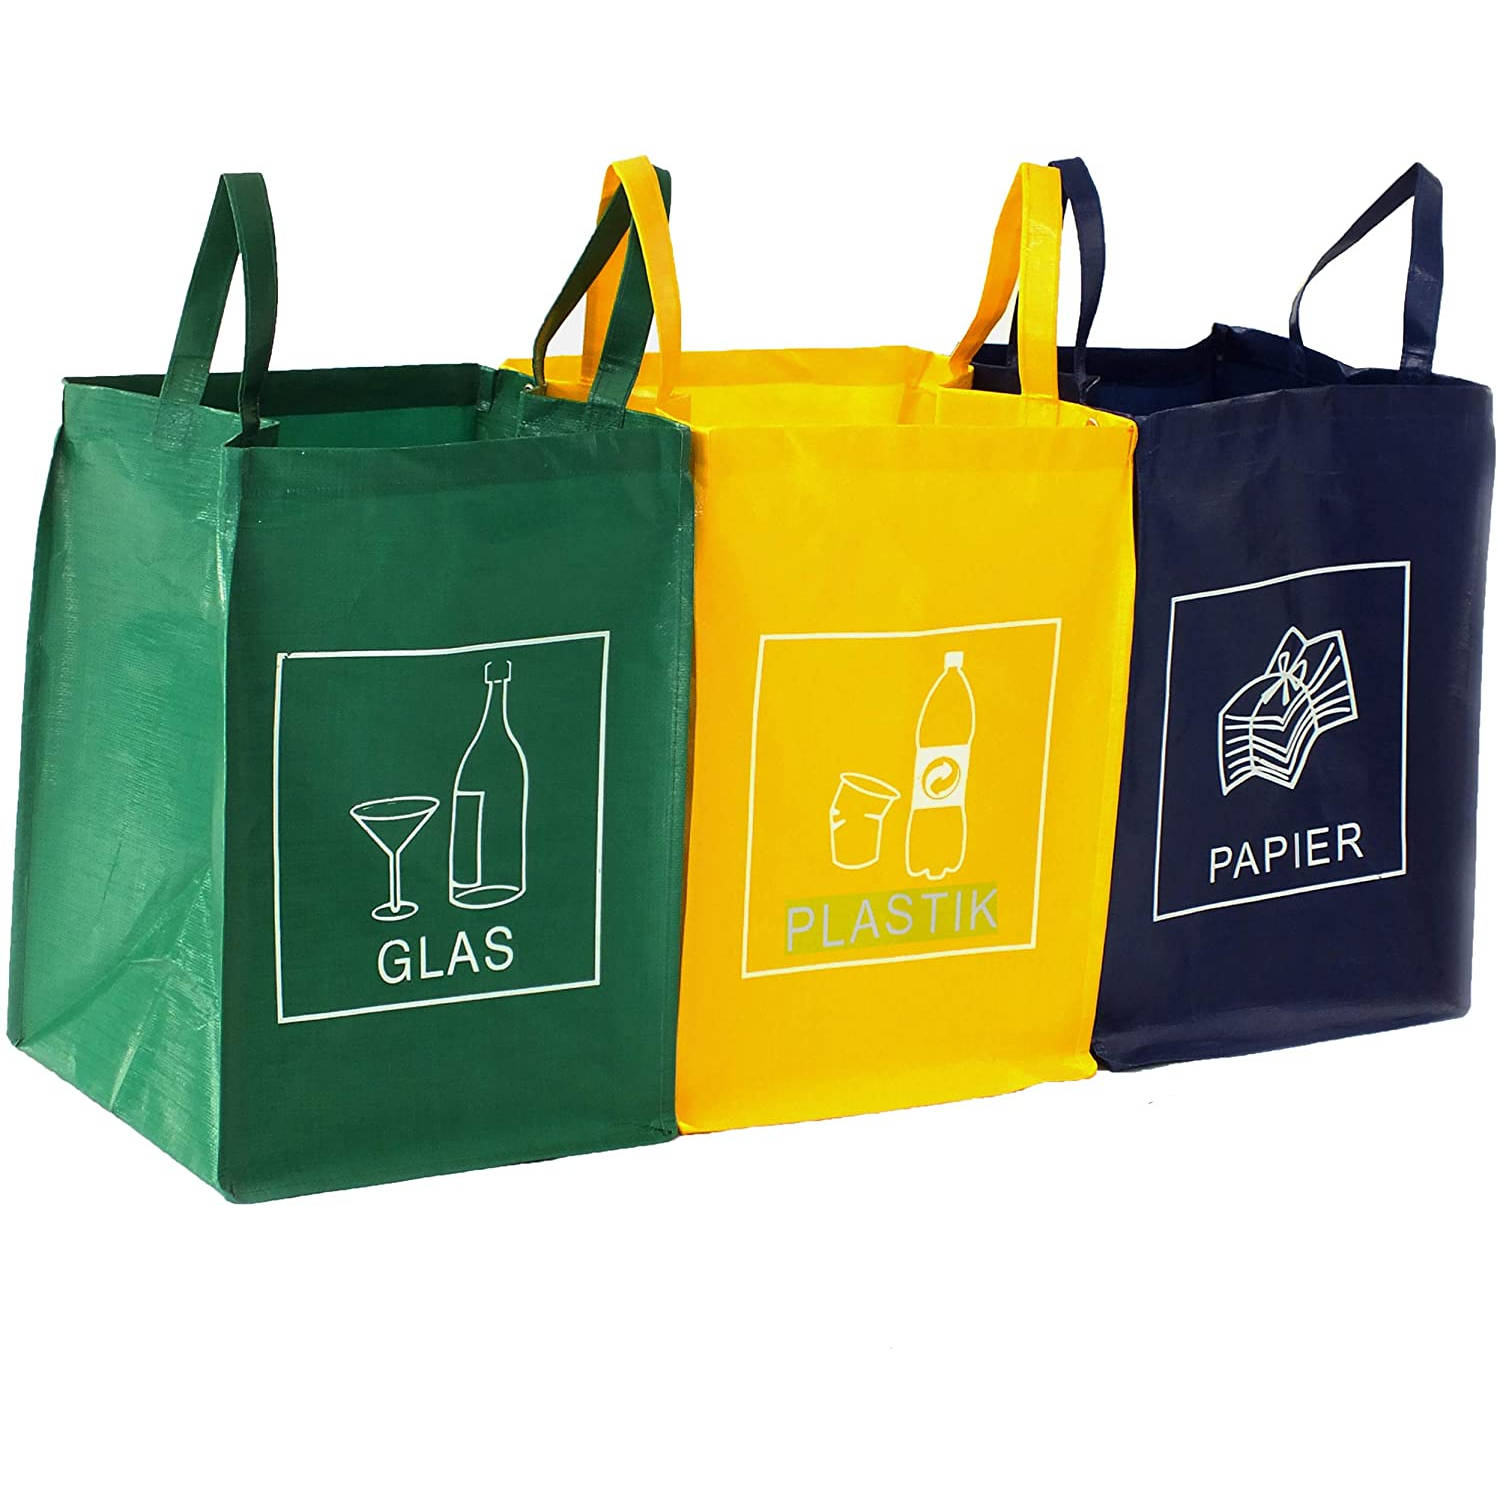 Afval scheiding, set van 3 recycle zakken voor glas, plastic en papier